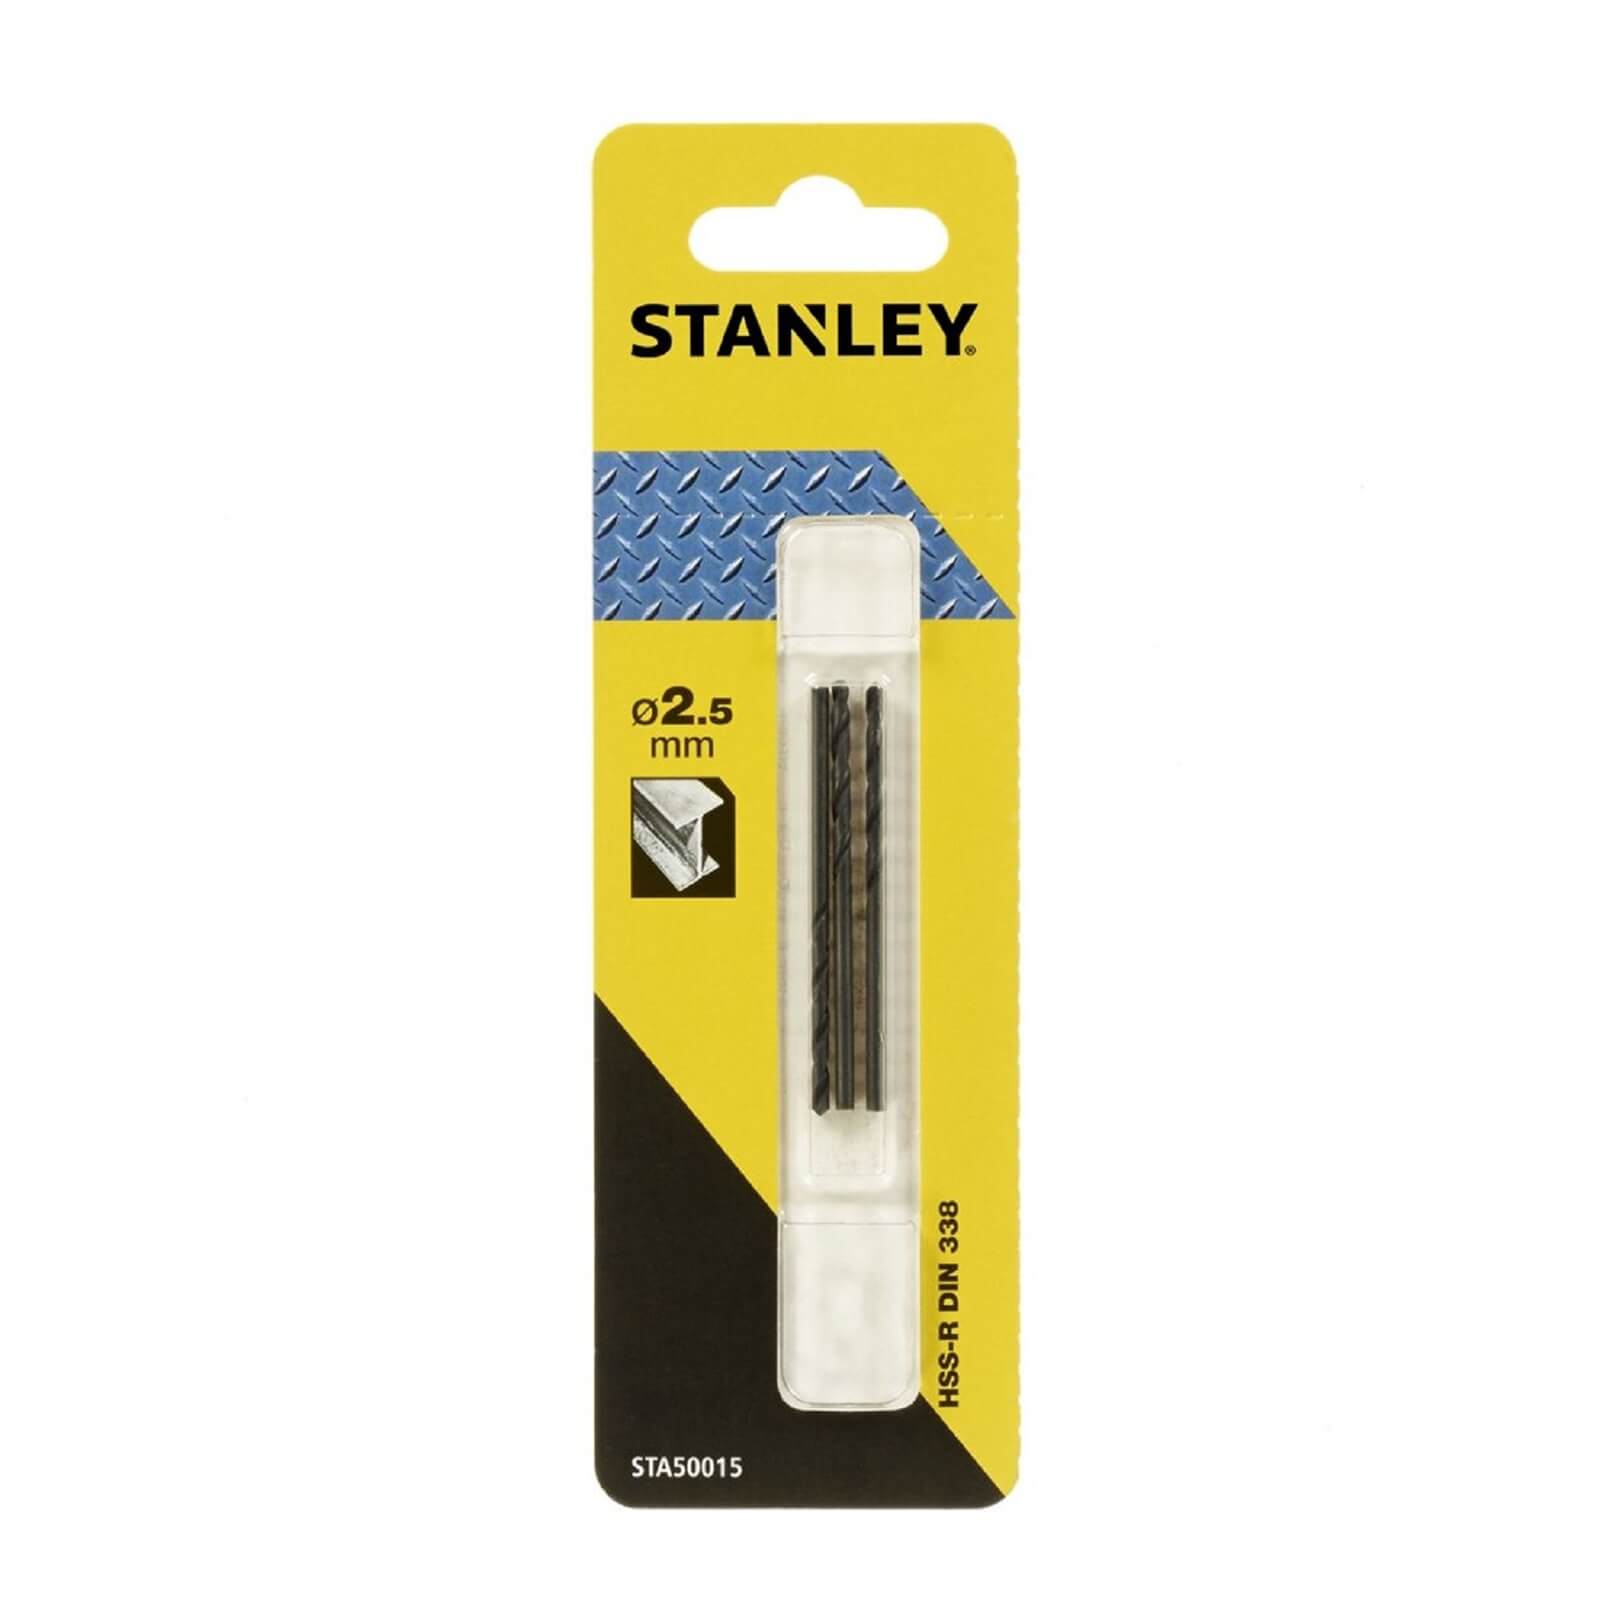 Stanley Metal Drill Bit 2.5mm -STA50015-QZ